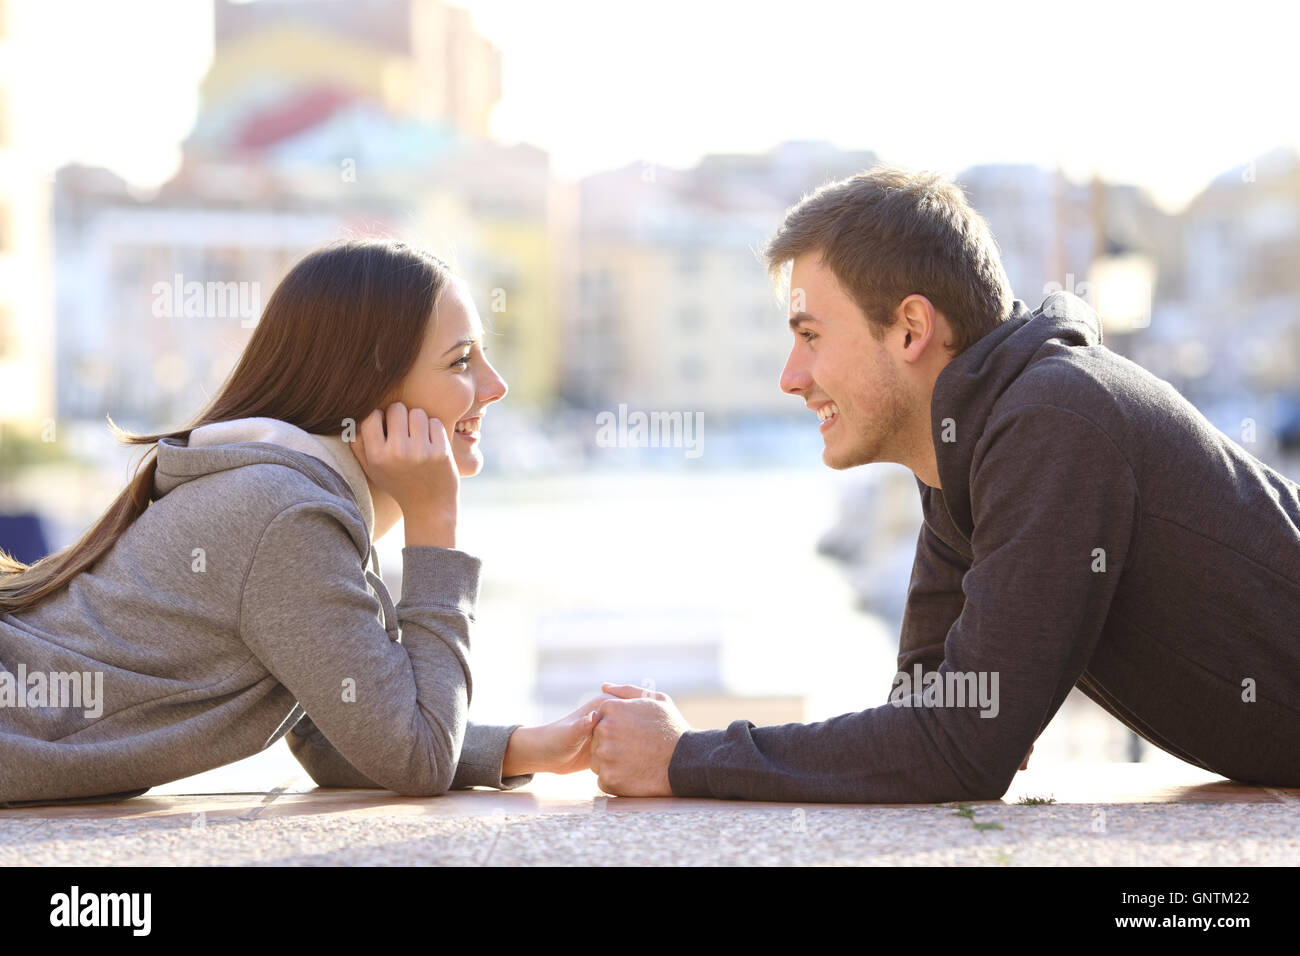 Seitenansicht von ein paar Teenager dating und flirten, verlieben sich in einander auf dem Boden in einem Hafen liegen auf der Suche Stockfoto